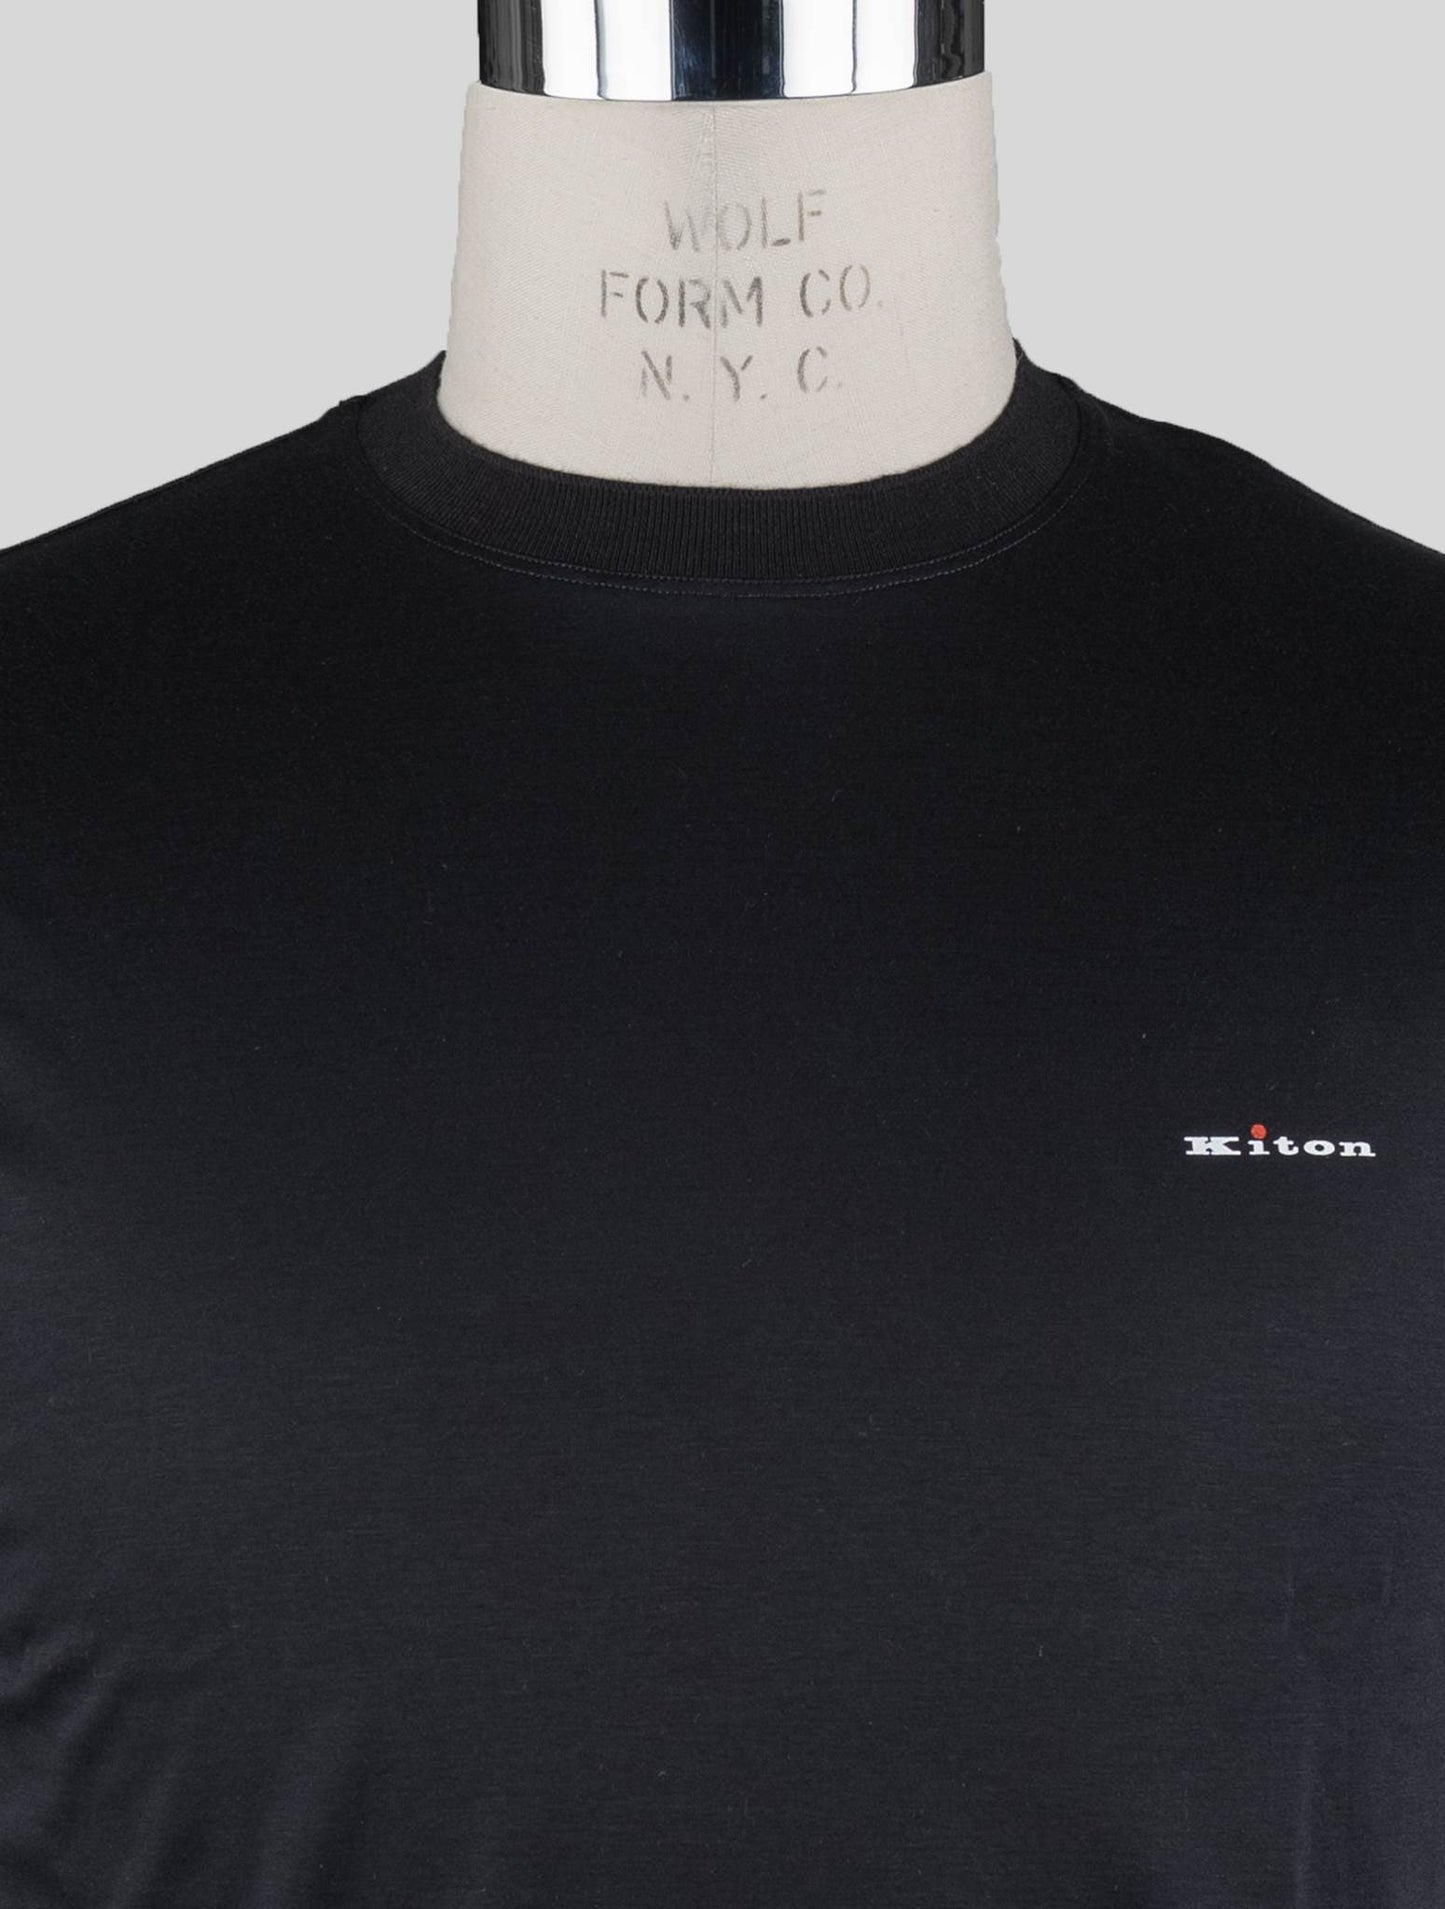 Camiseta Kiton Black Cotton